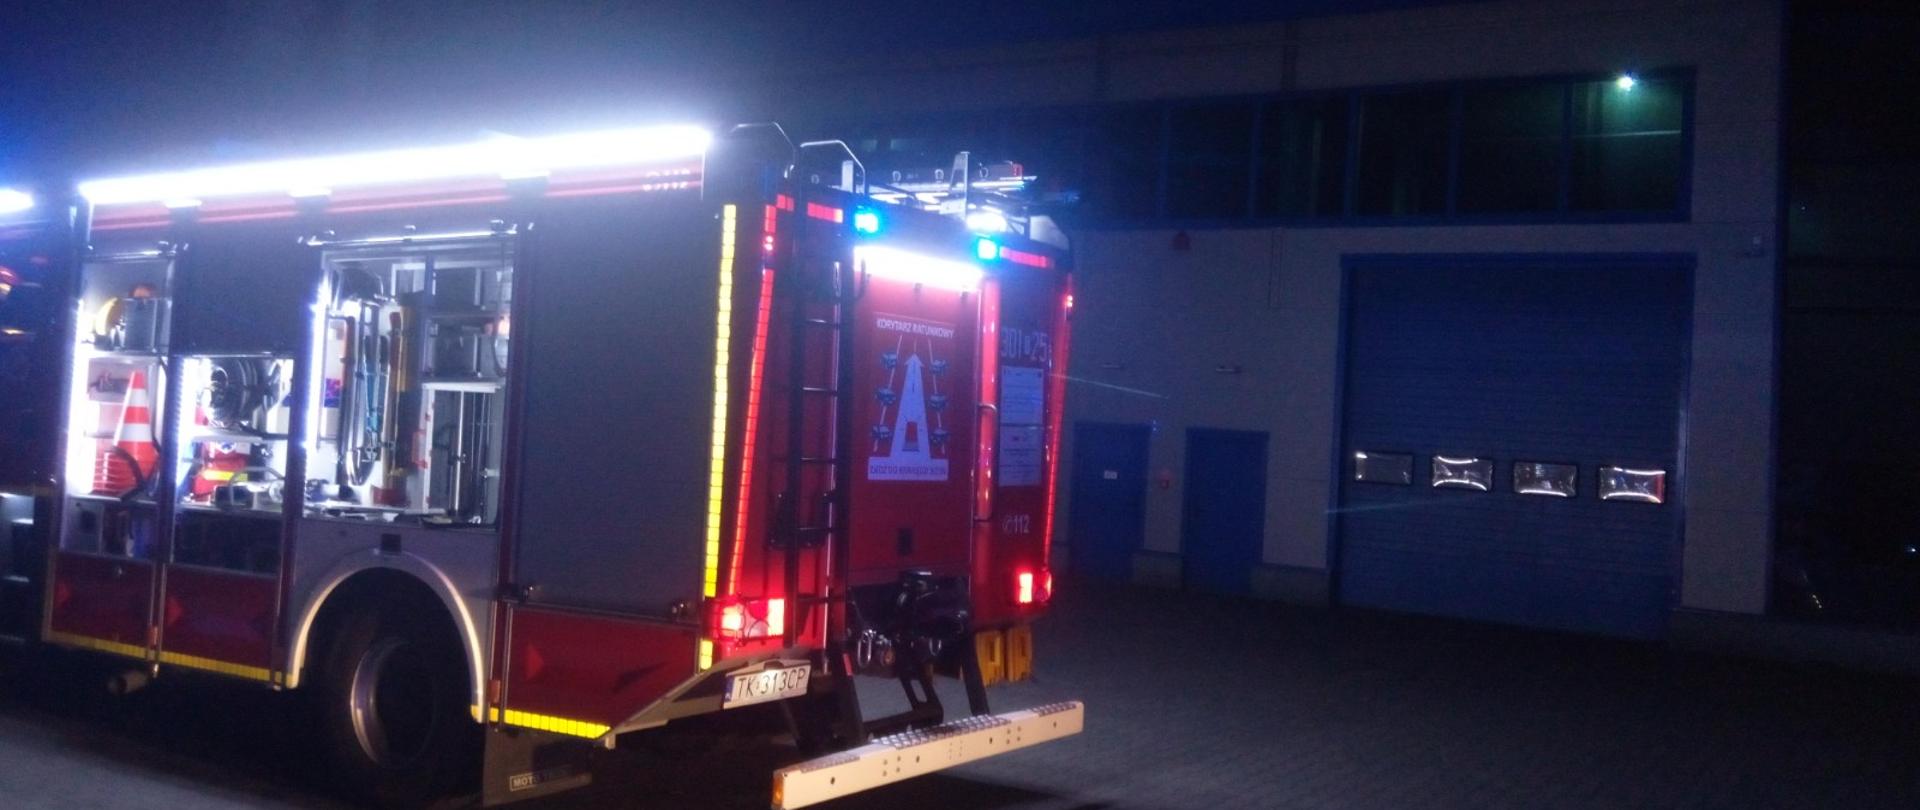 Zdjęcie przedstawia halę przemysłową na tle której stoi zaparkowany wóz strażacki.